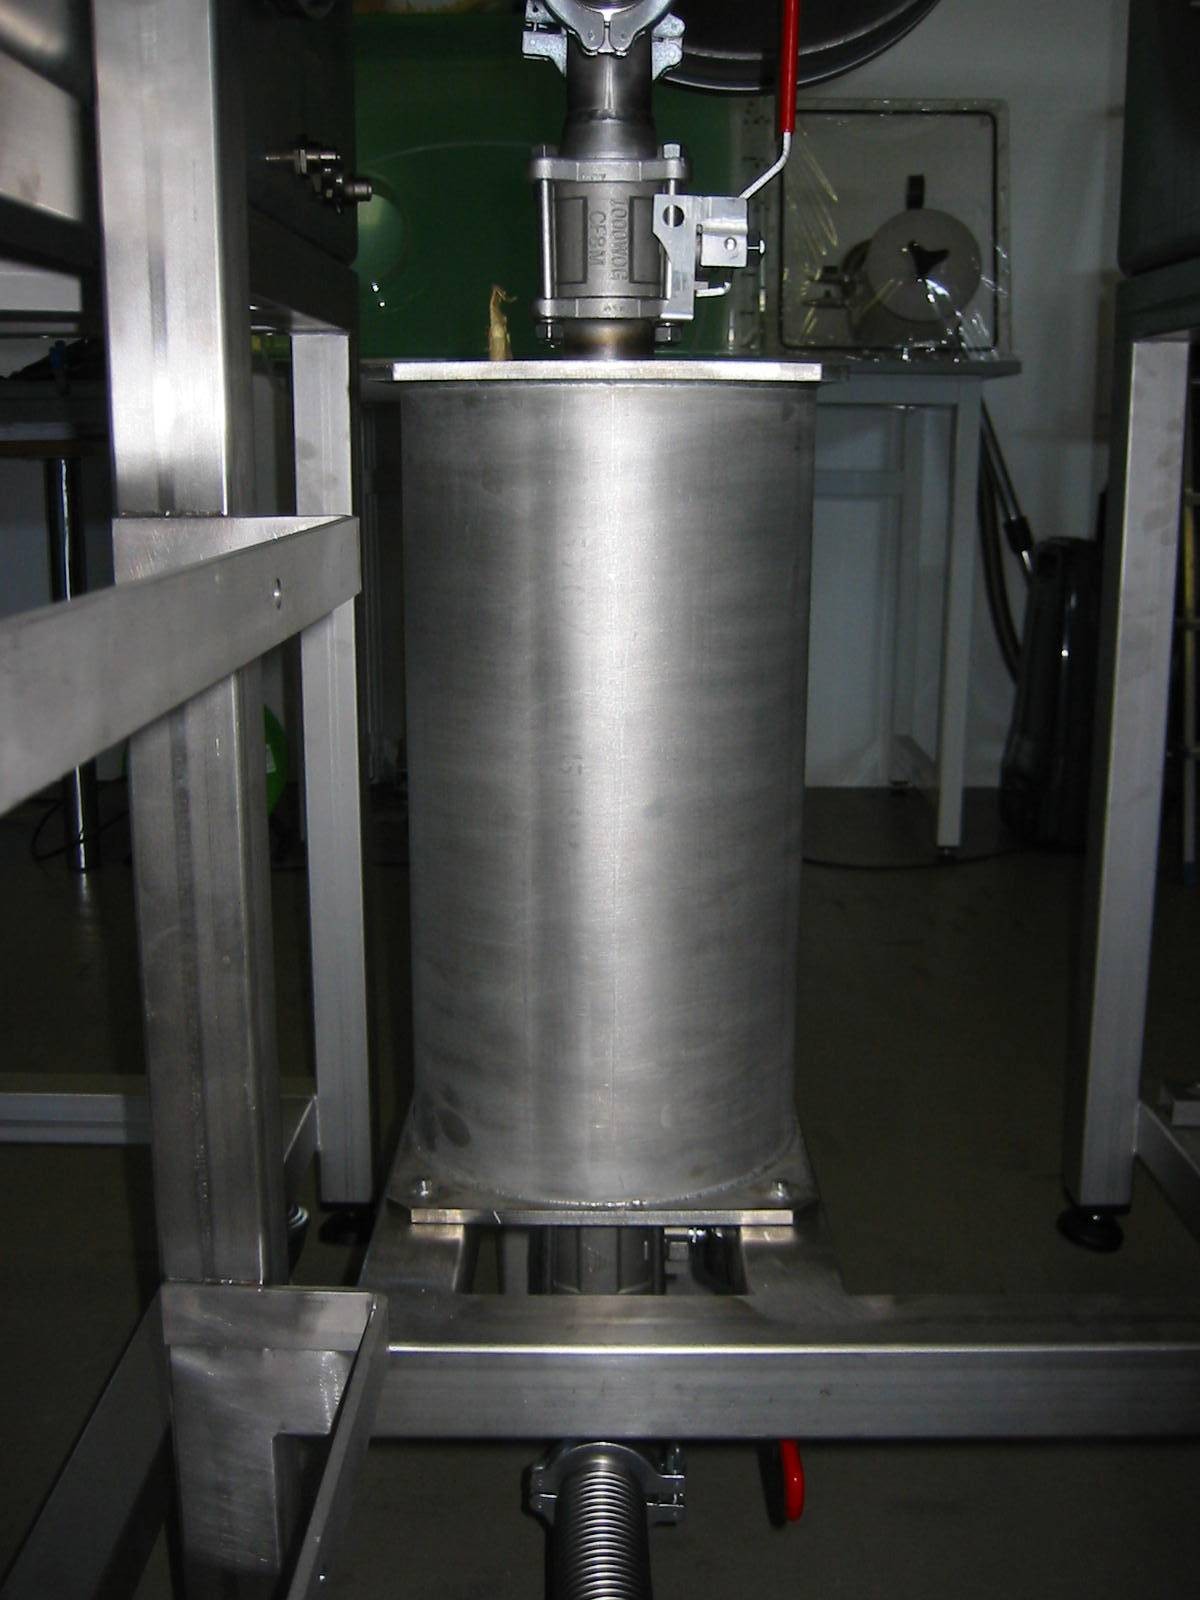 Épuration des gaz avec 1 adsorbeur et commande de rinçage intégrée avec régulation de pression